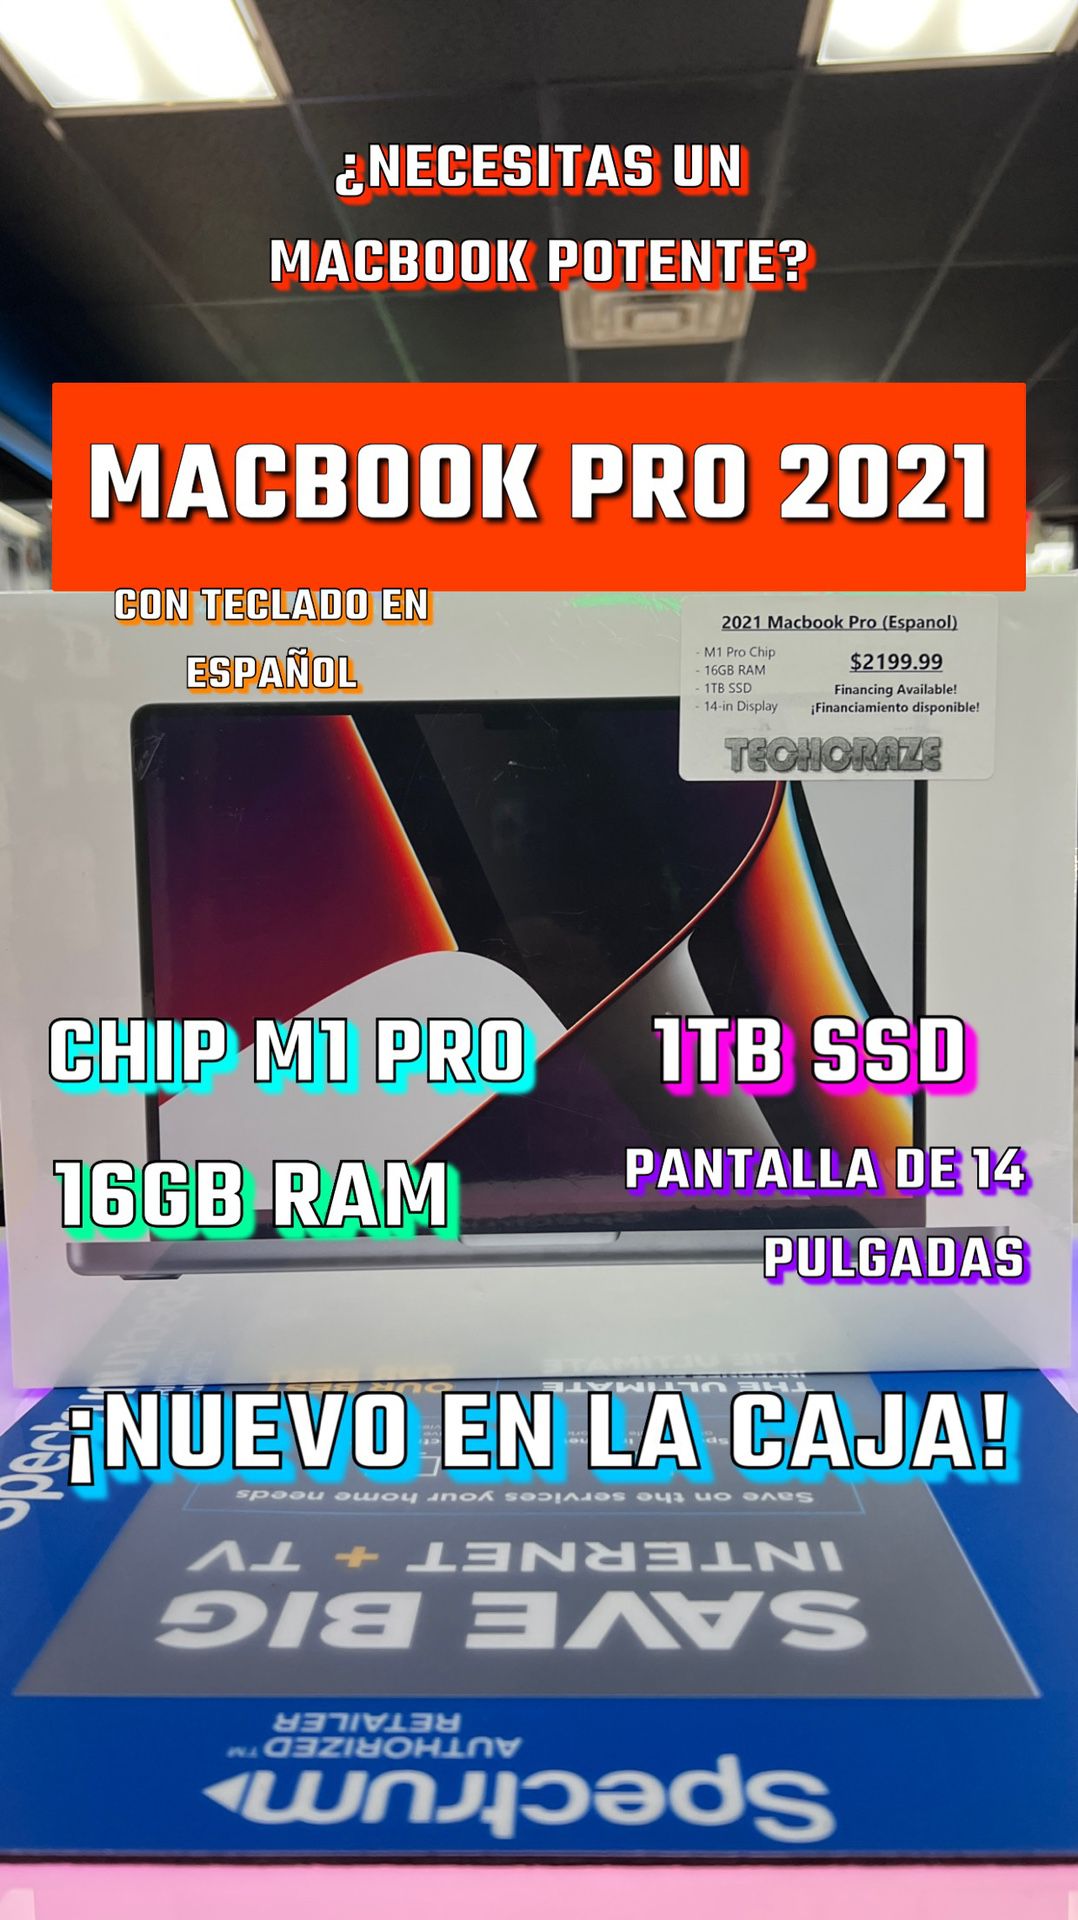 2021 MacBook Pro (Espanol) M1 Pro Chip - 1TB SSD - 16GB RAM - 14” Display (New In Box)